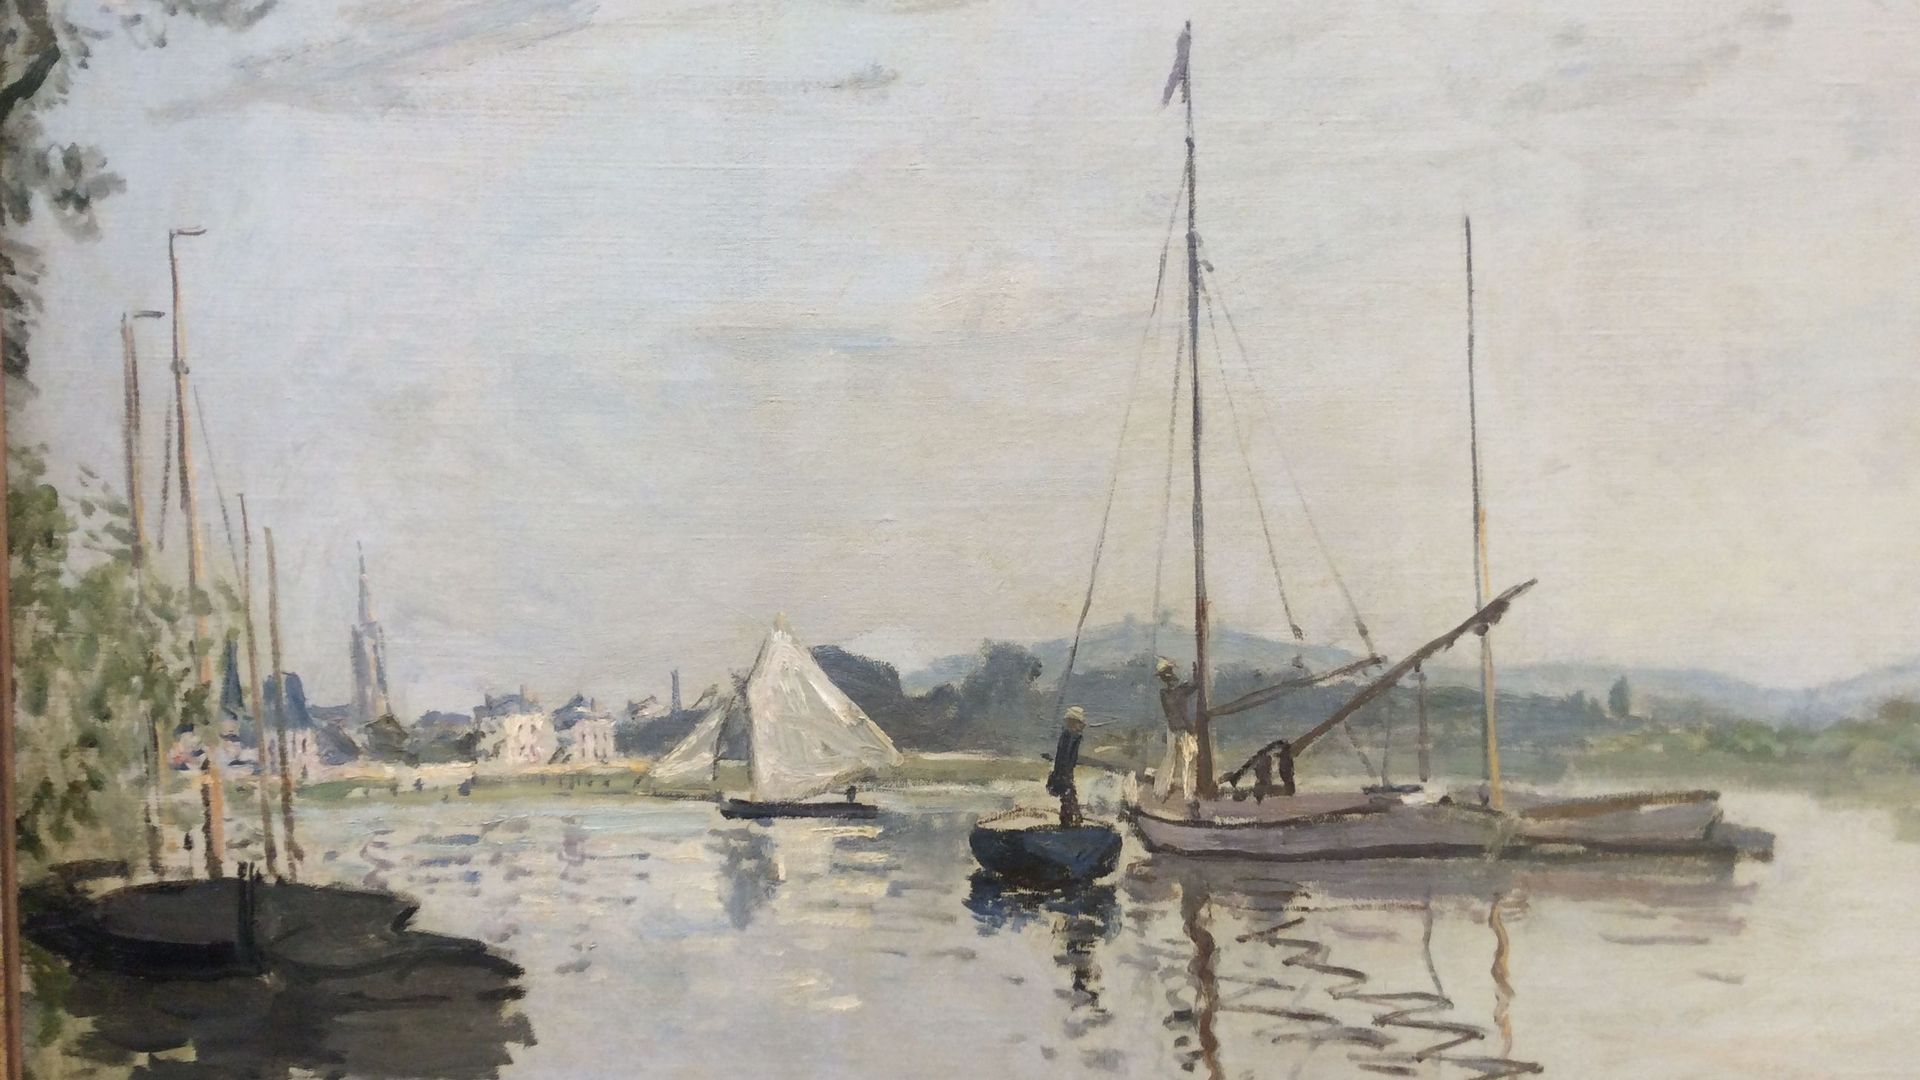 Claude Monet, Argenteuil, 1872.